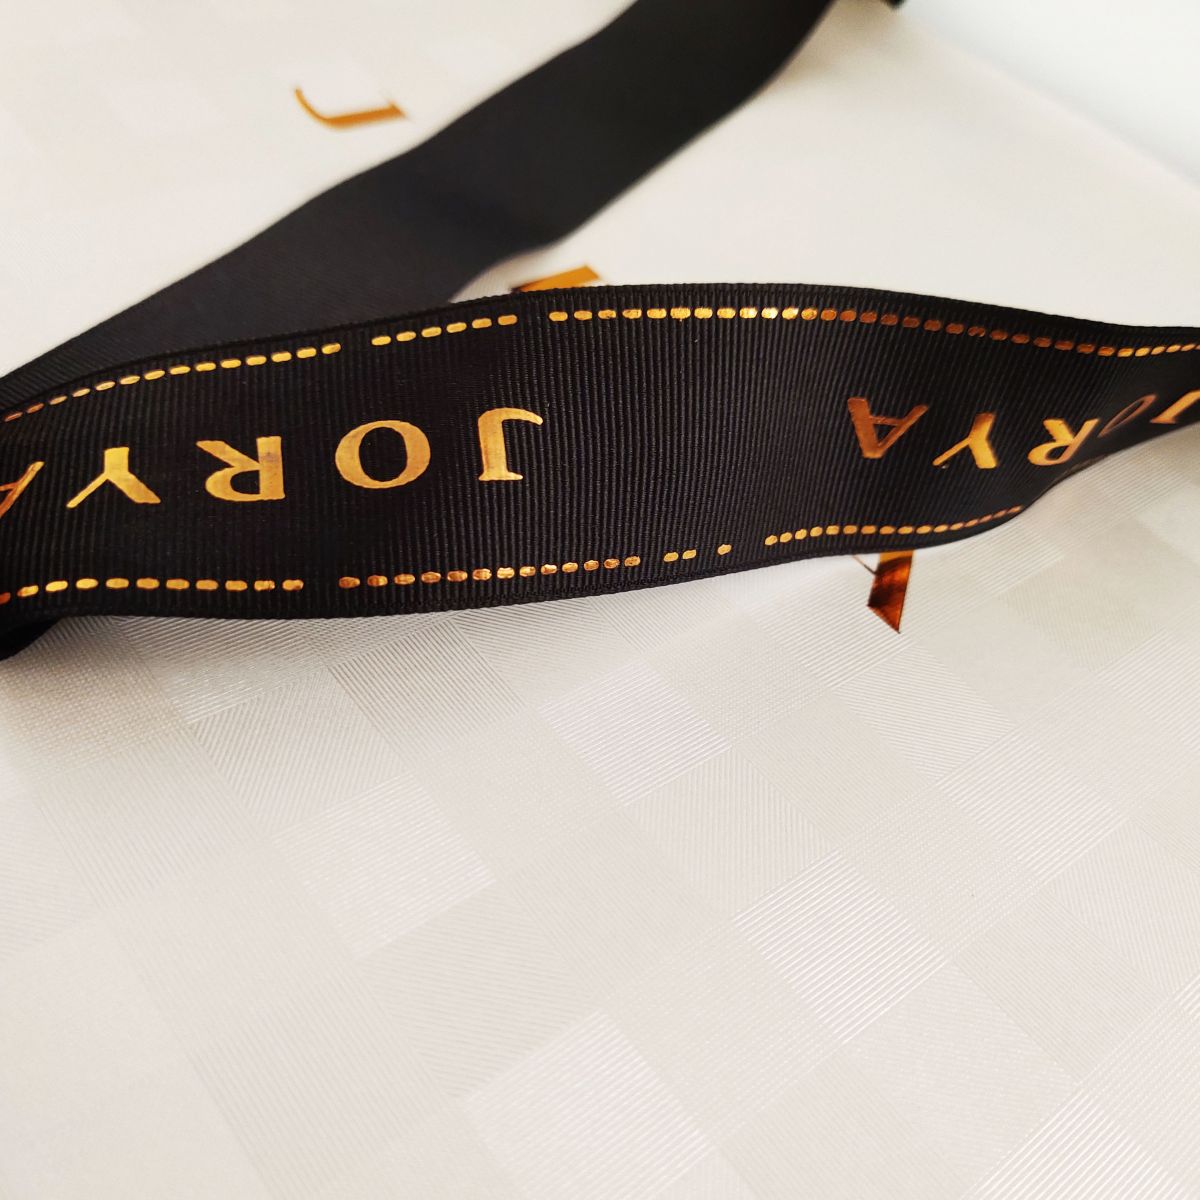 Satin Ribbon Band Handle Stylish Paper Bag